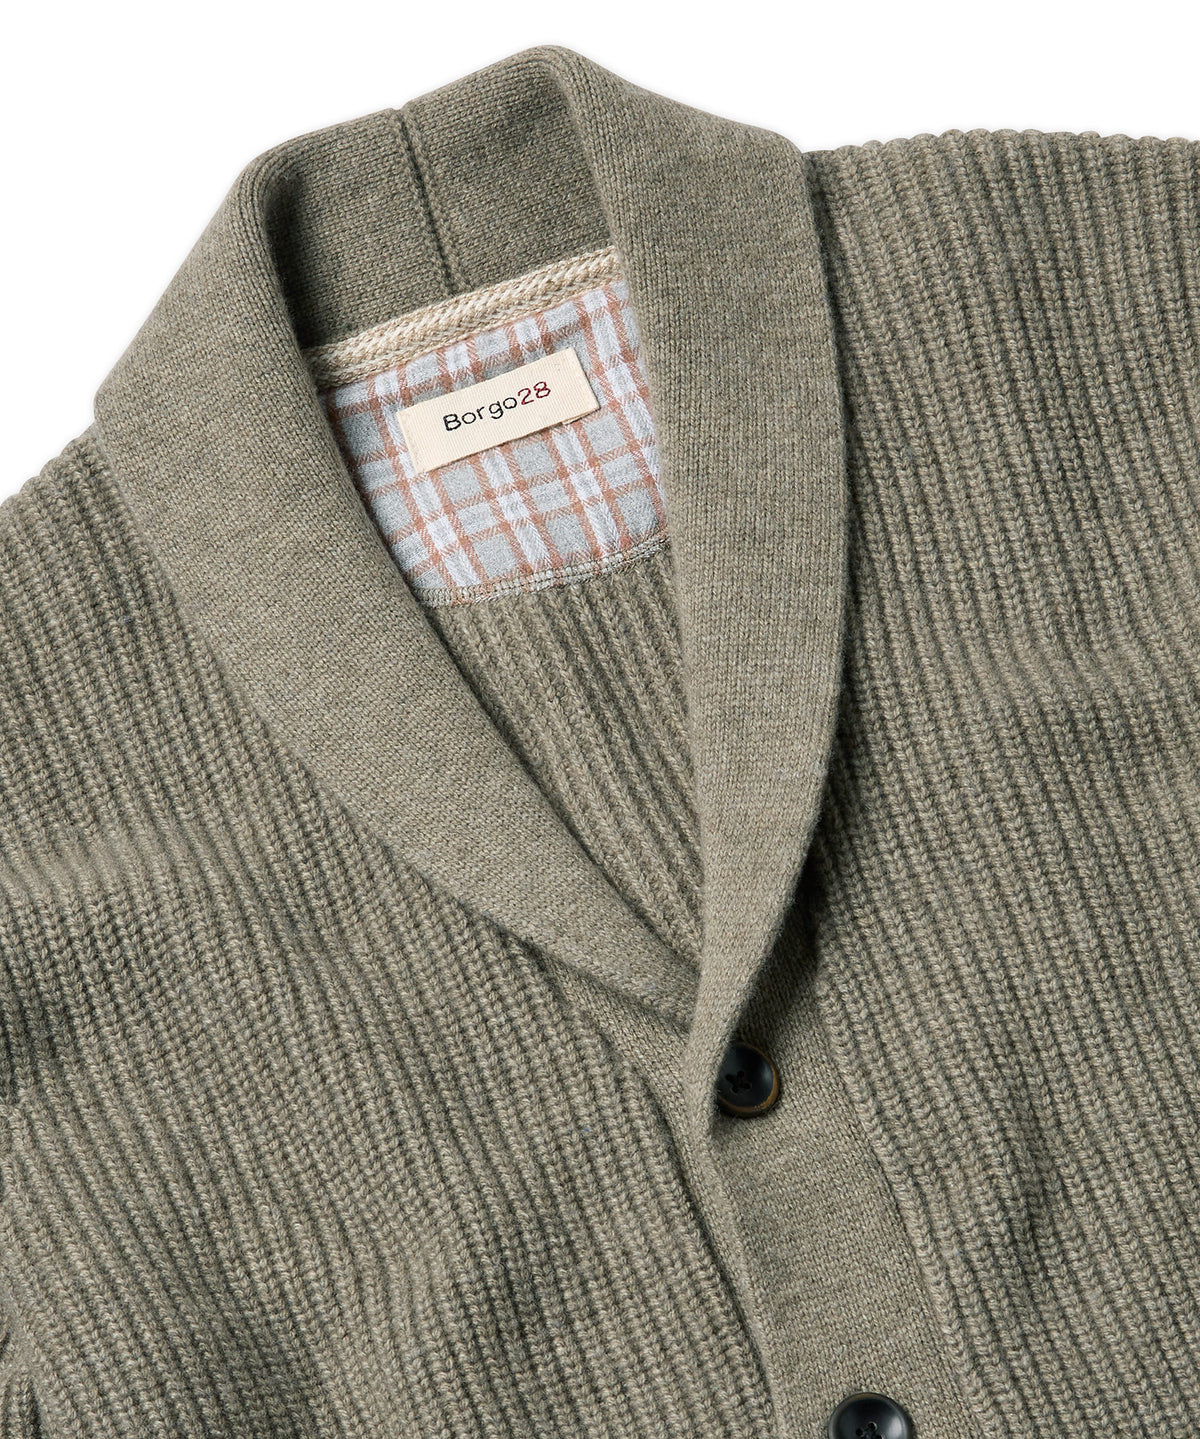 Wool Blend Shawl-Collar Cardigan